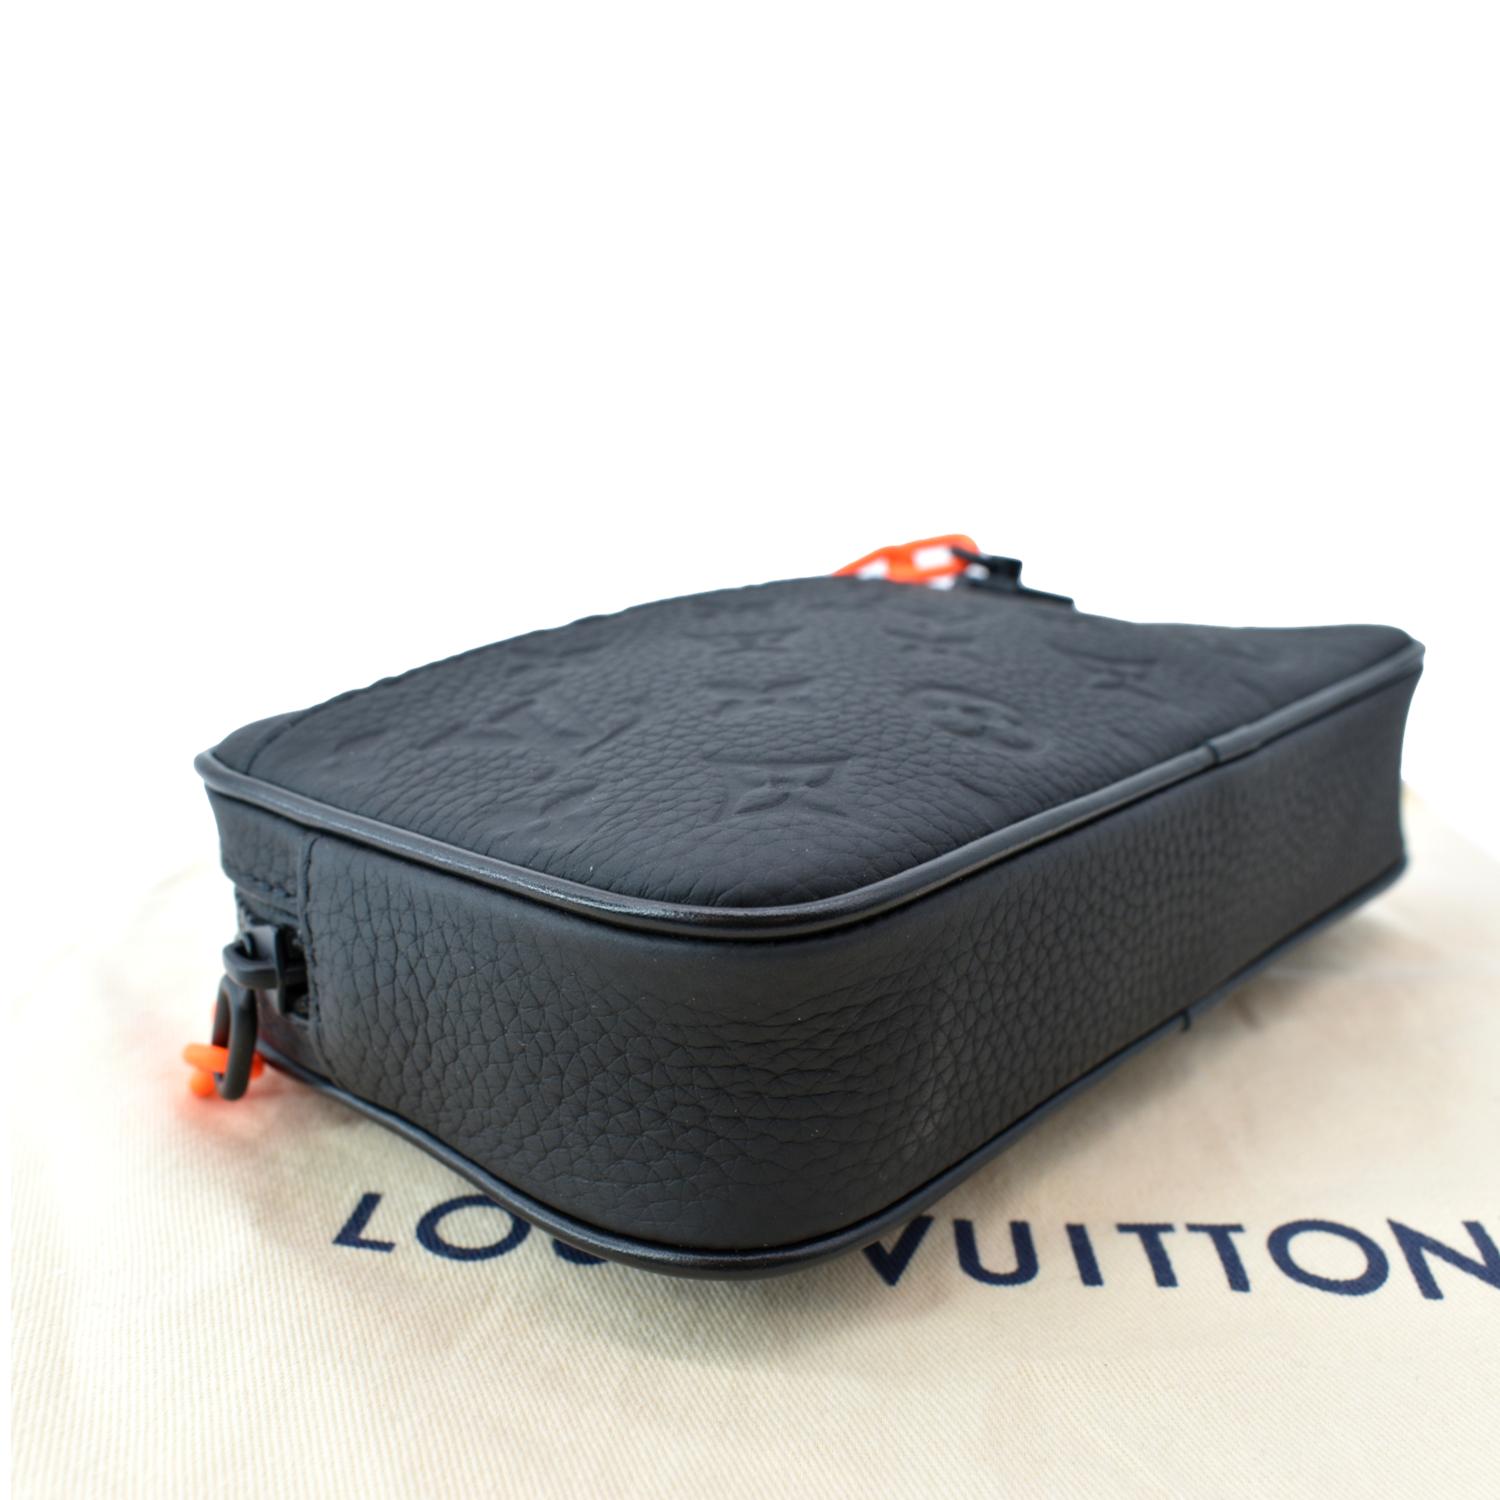 Louis Vuitton Pochette Volga Monogram Empreinte Orange Black